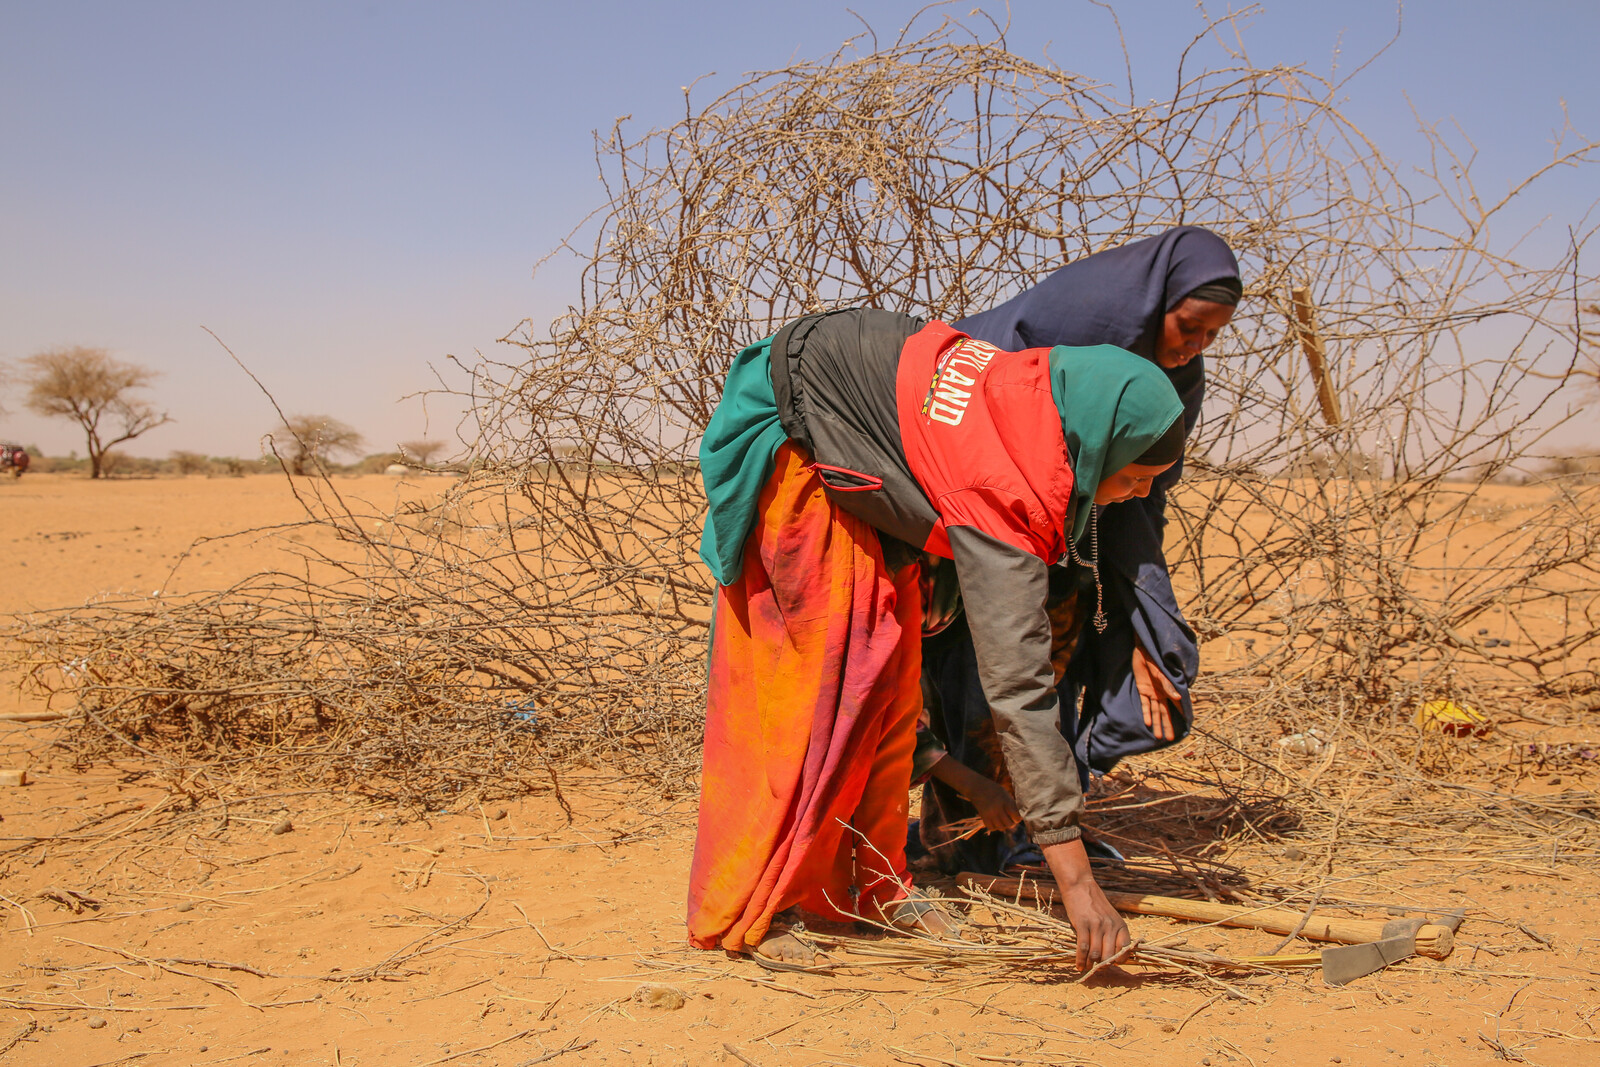 Frauen in Somalia sammeln Holz in der trockenen Landschaft.